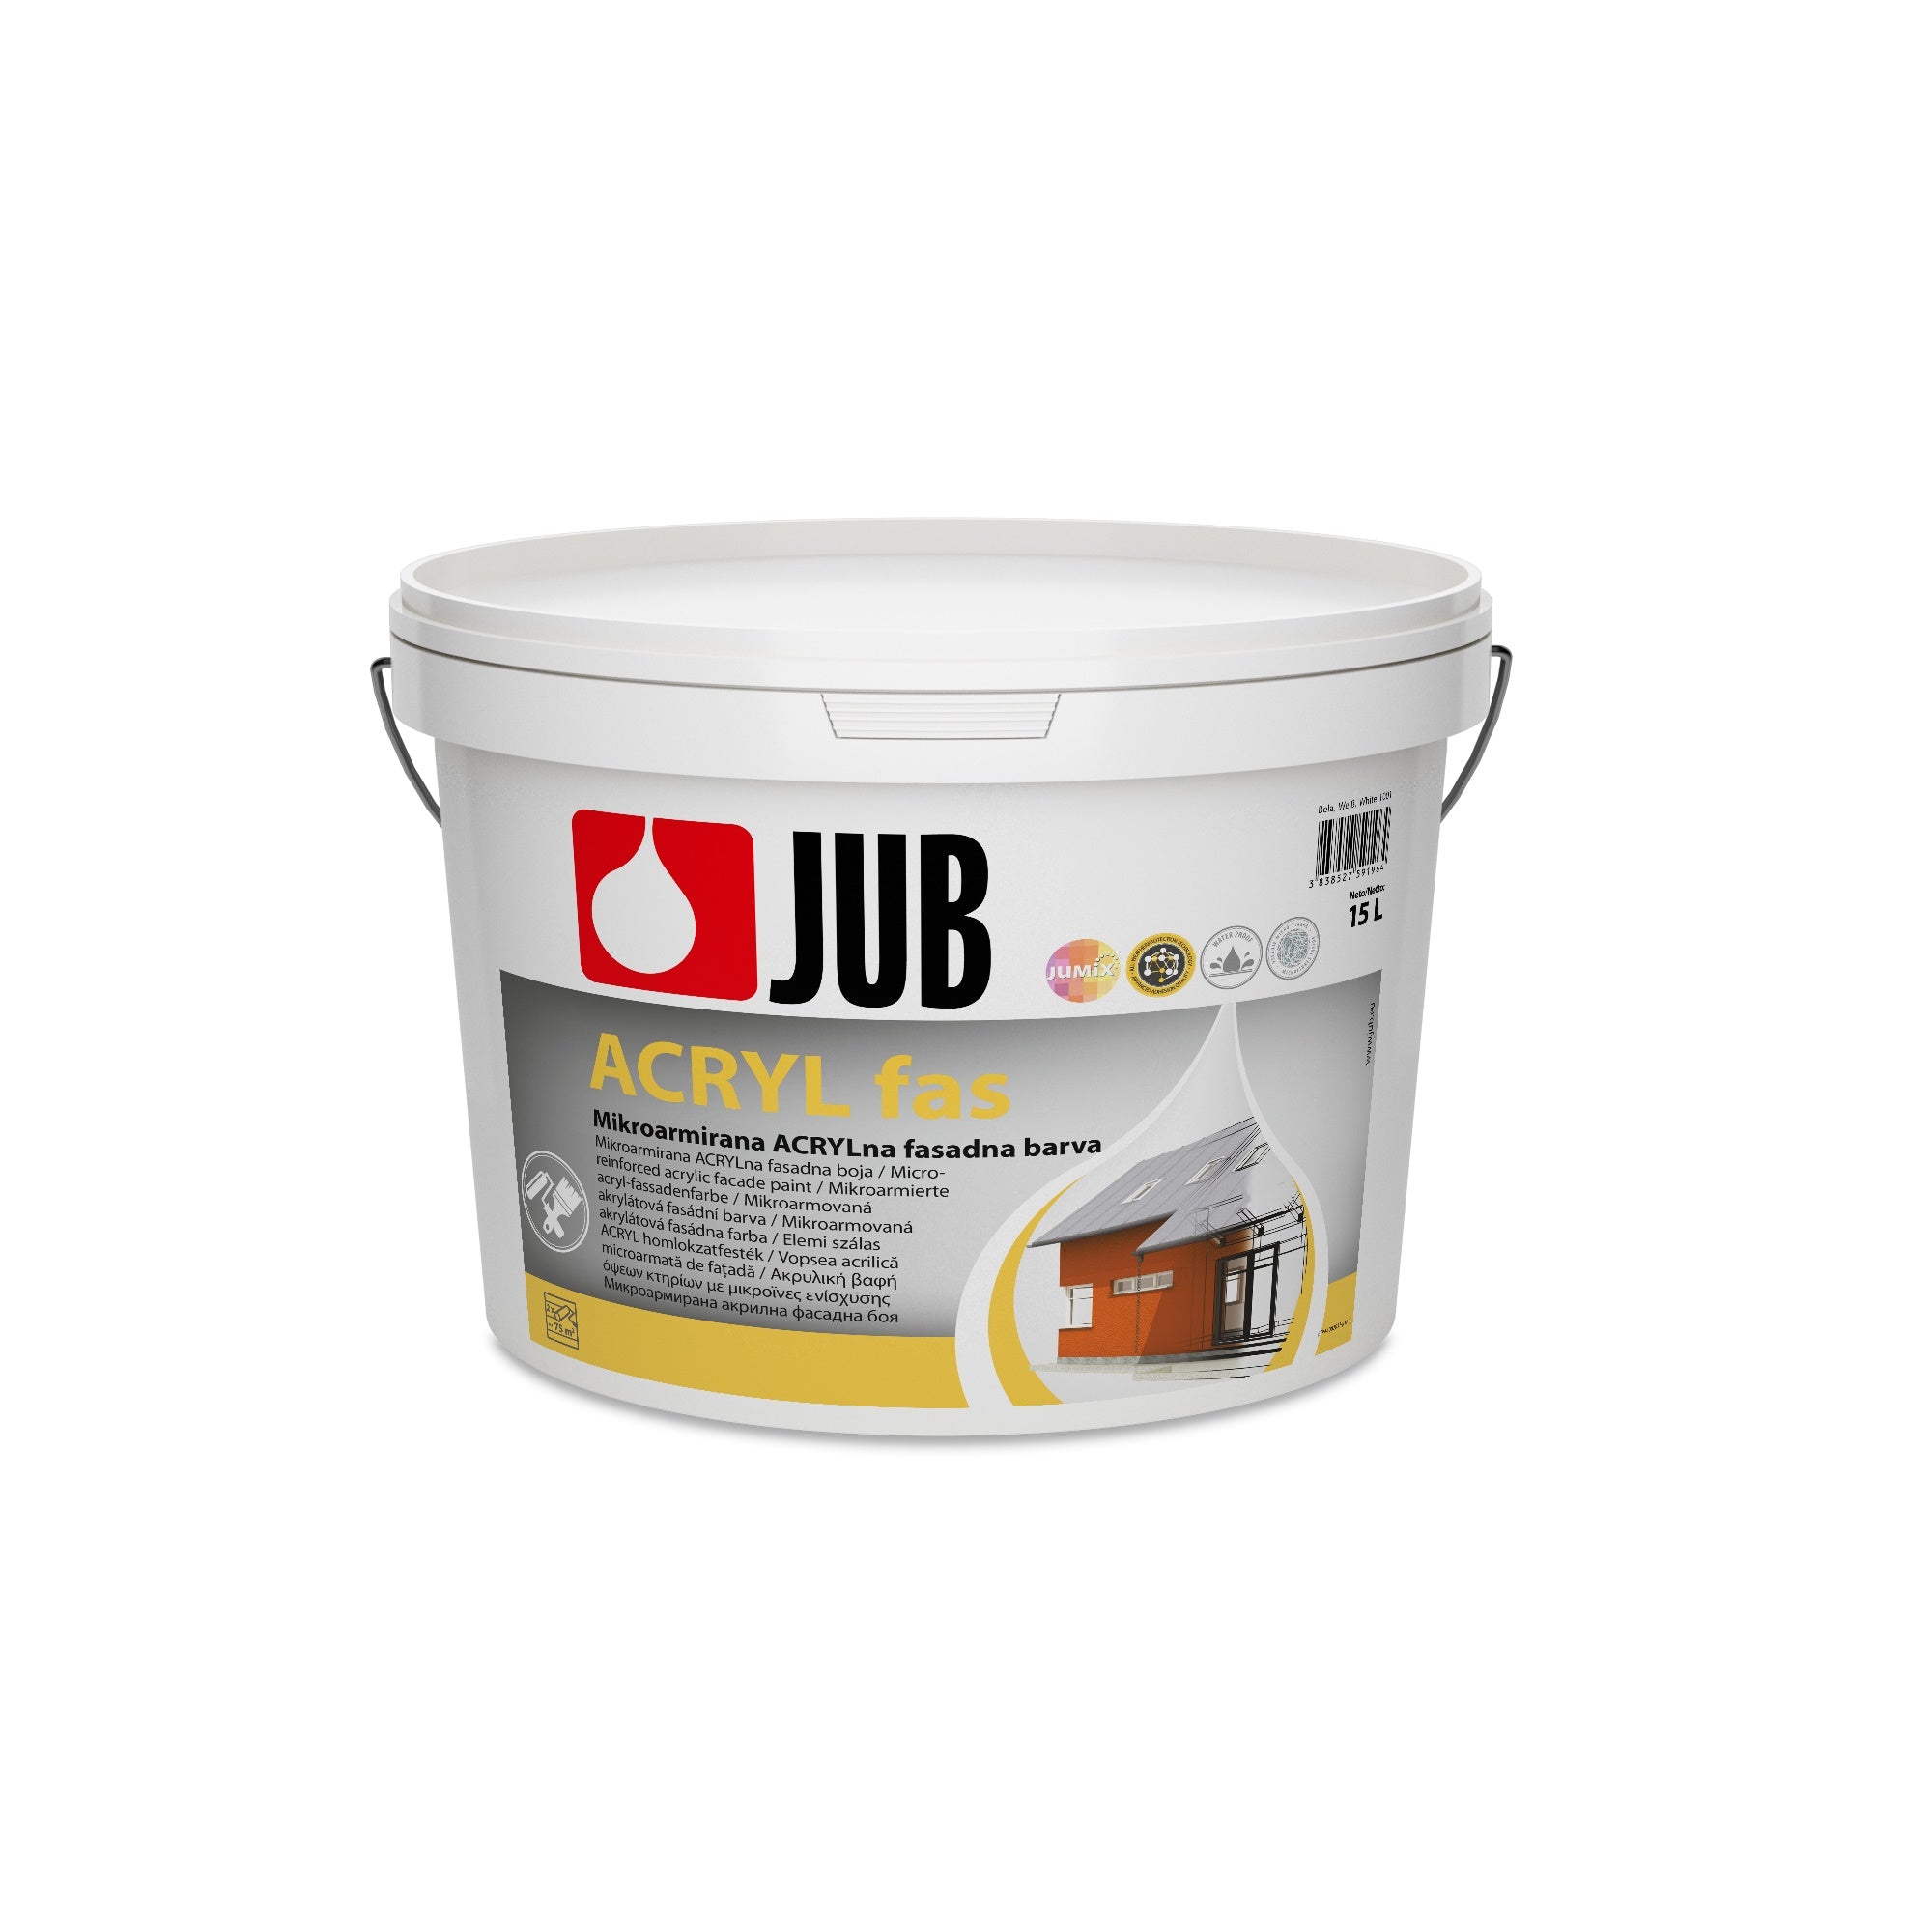 JUB Acryl fas mikroarmovaná akrylátová fasádní barva 15 l